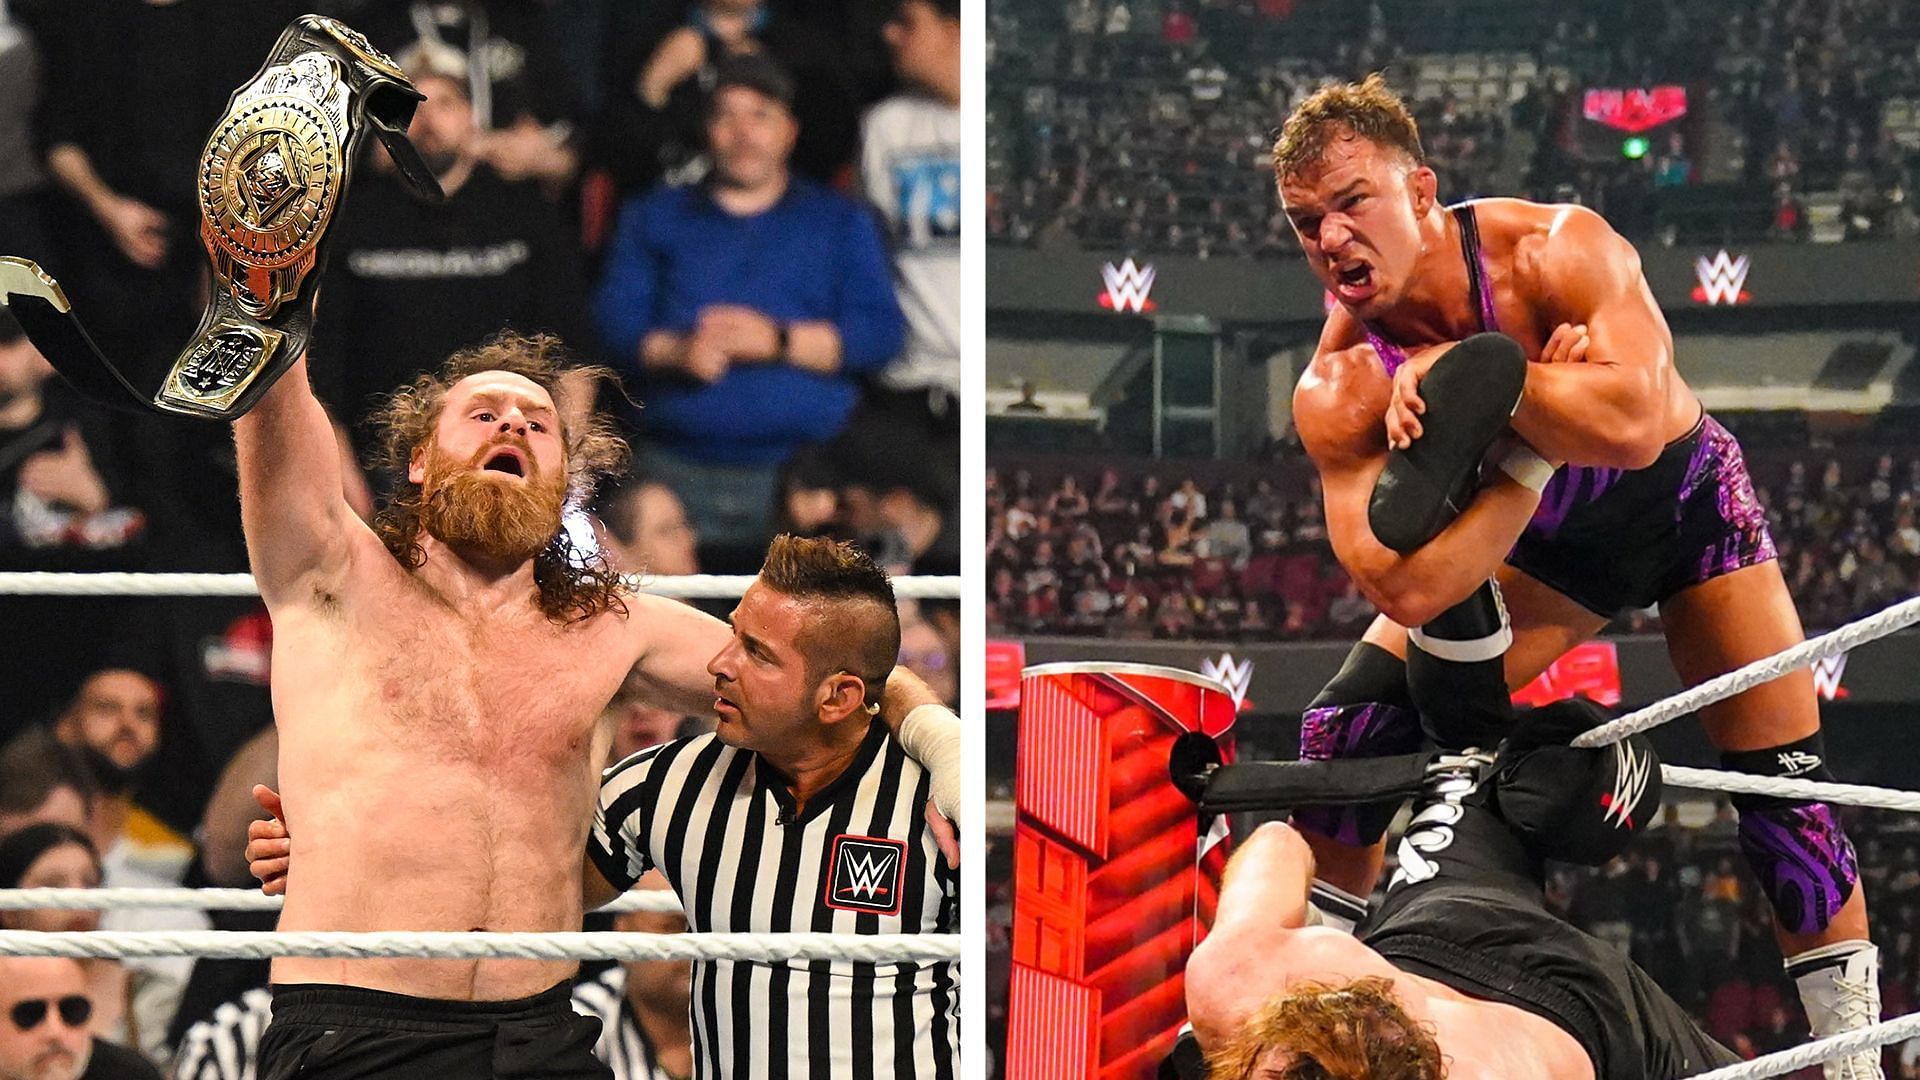 Sami Zayn was viciously attacked on WWE RAW last week